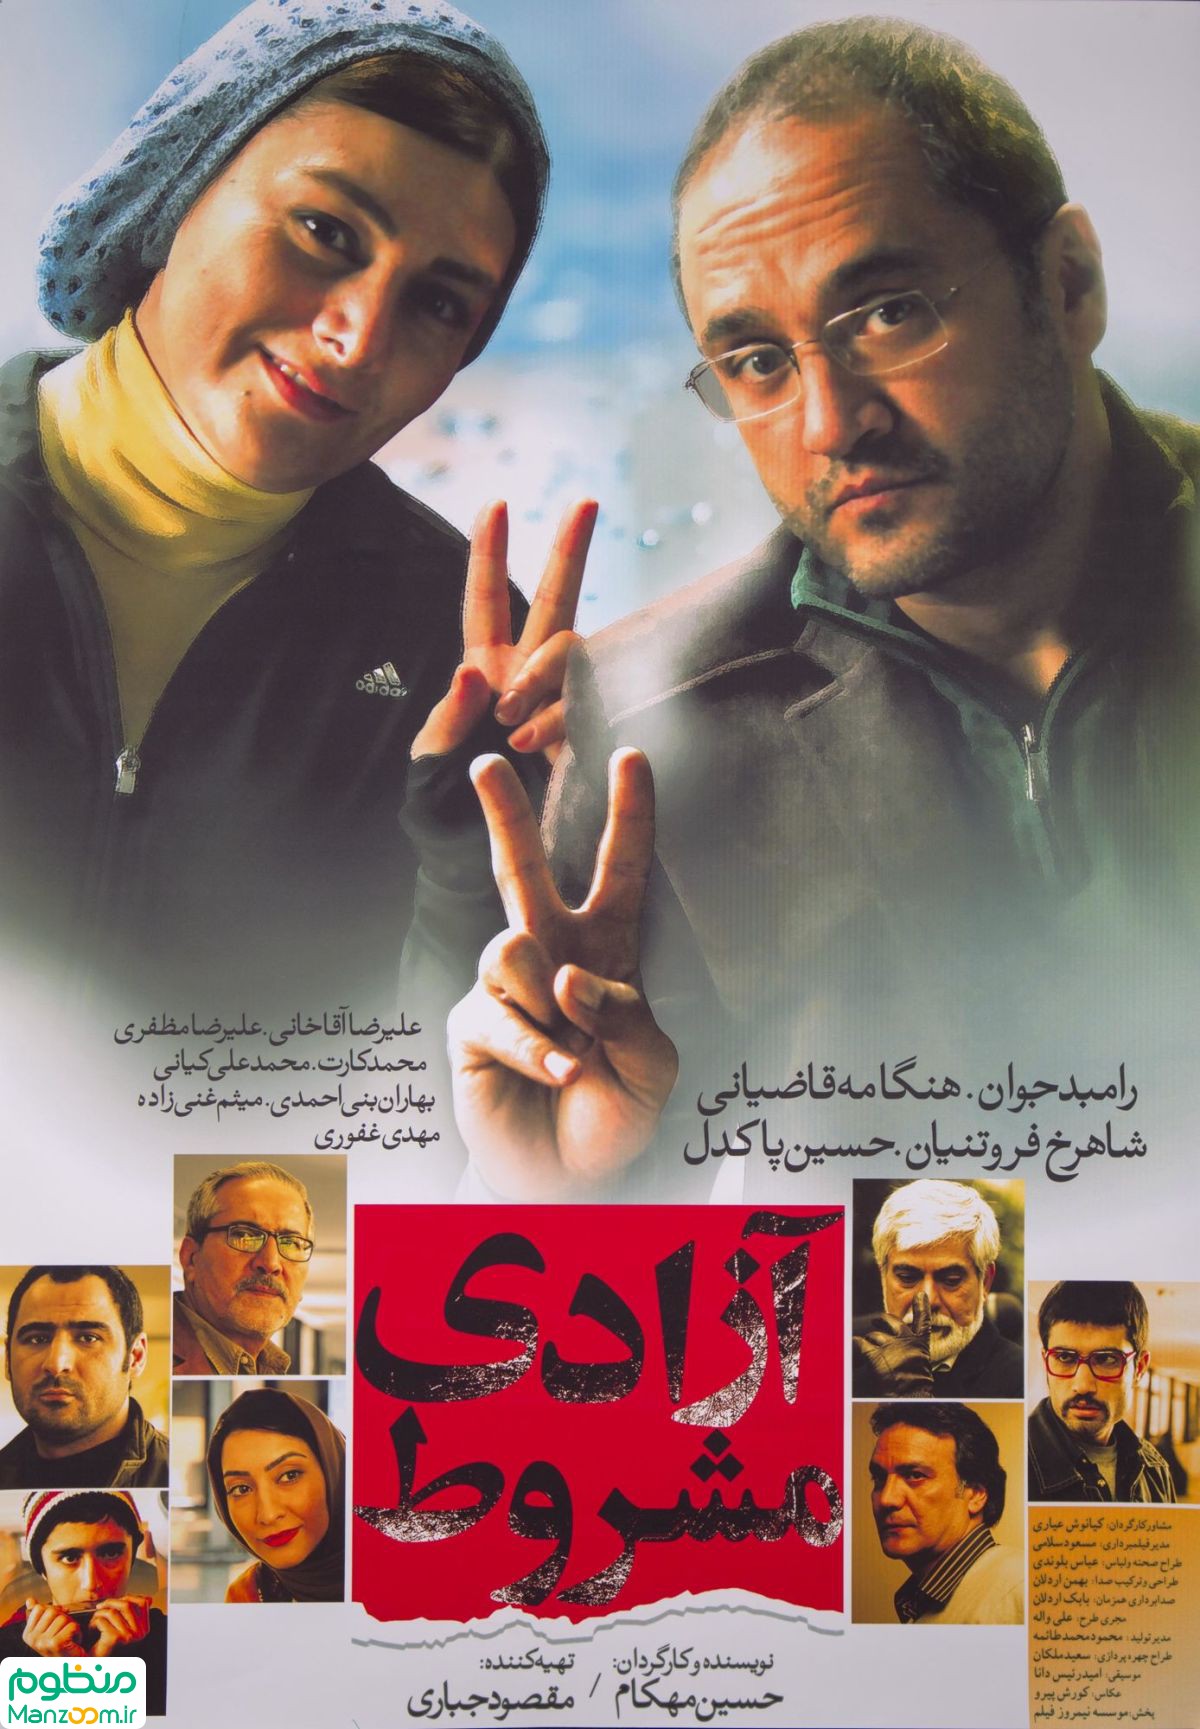  فیلم سینمایی آزادی مشروط به کارگردانی حسین مهکام